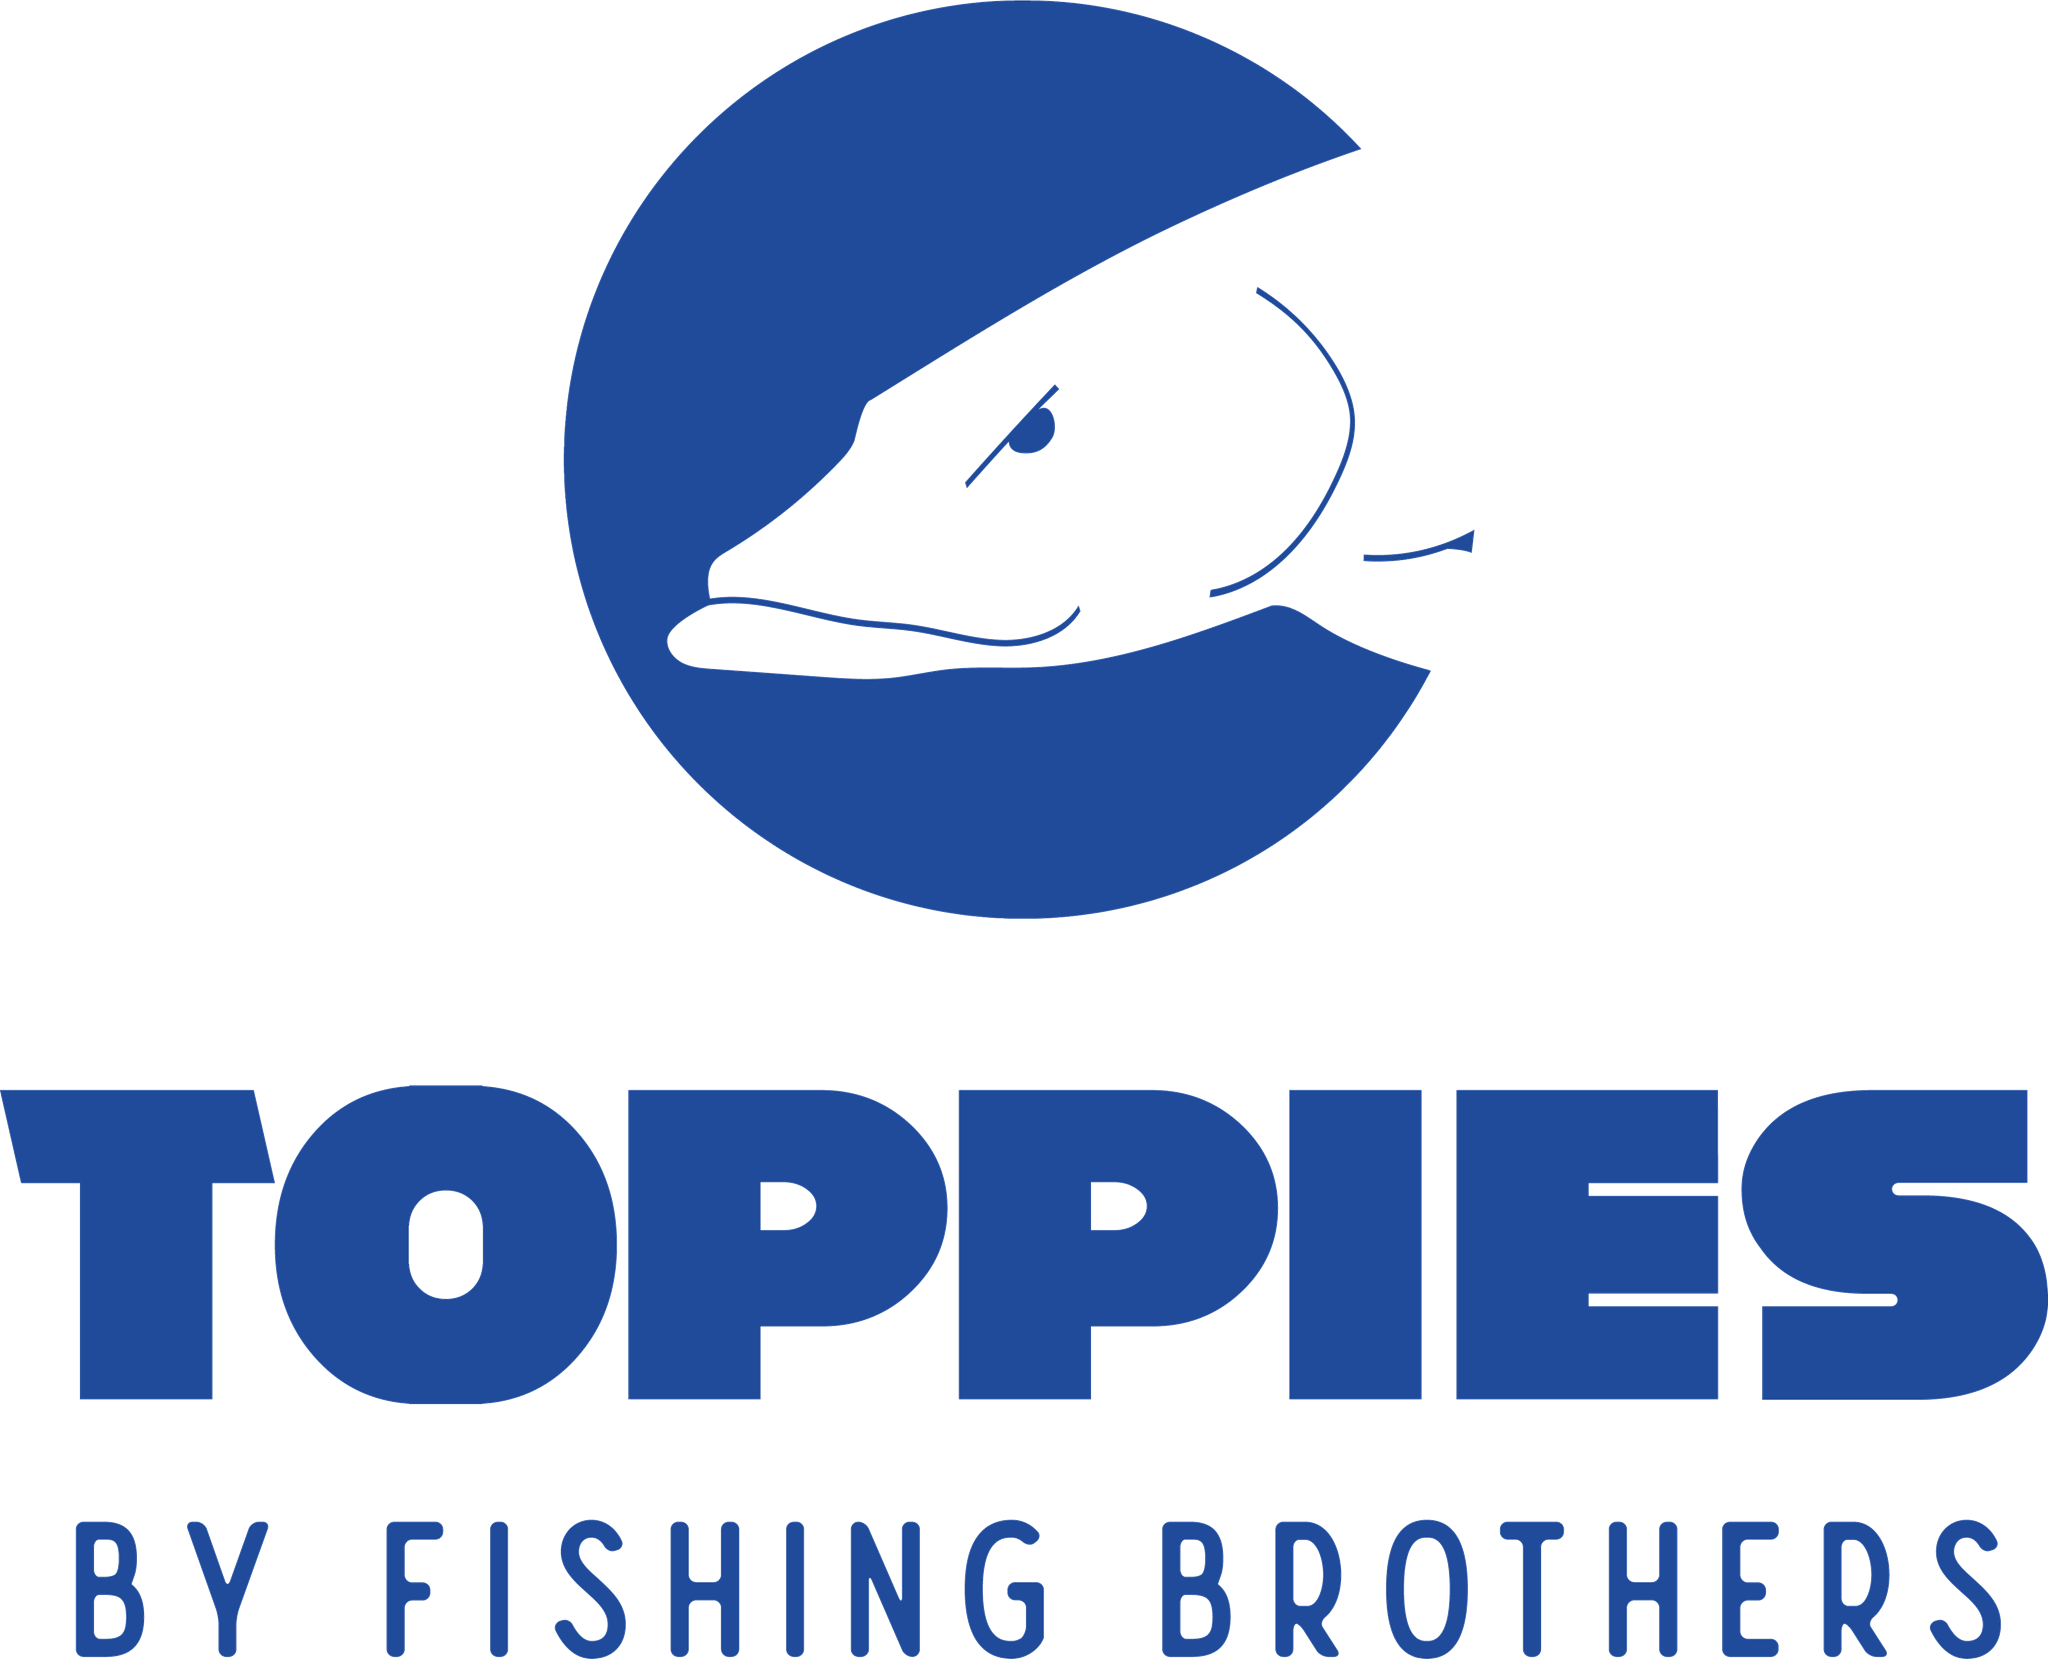 Bilder für Hersteller TOPPIES BY FISHING BROTHERS